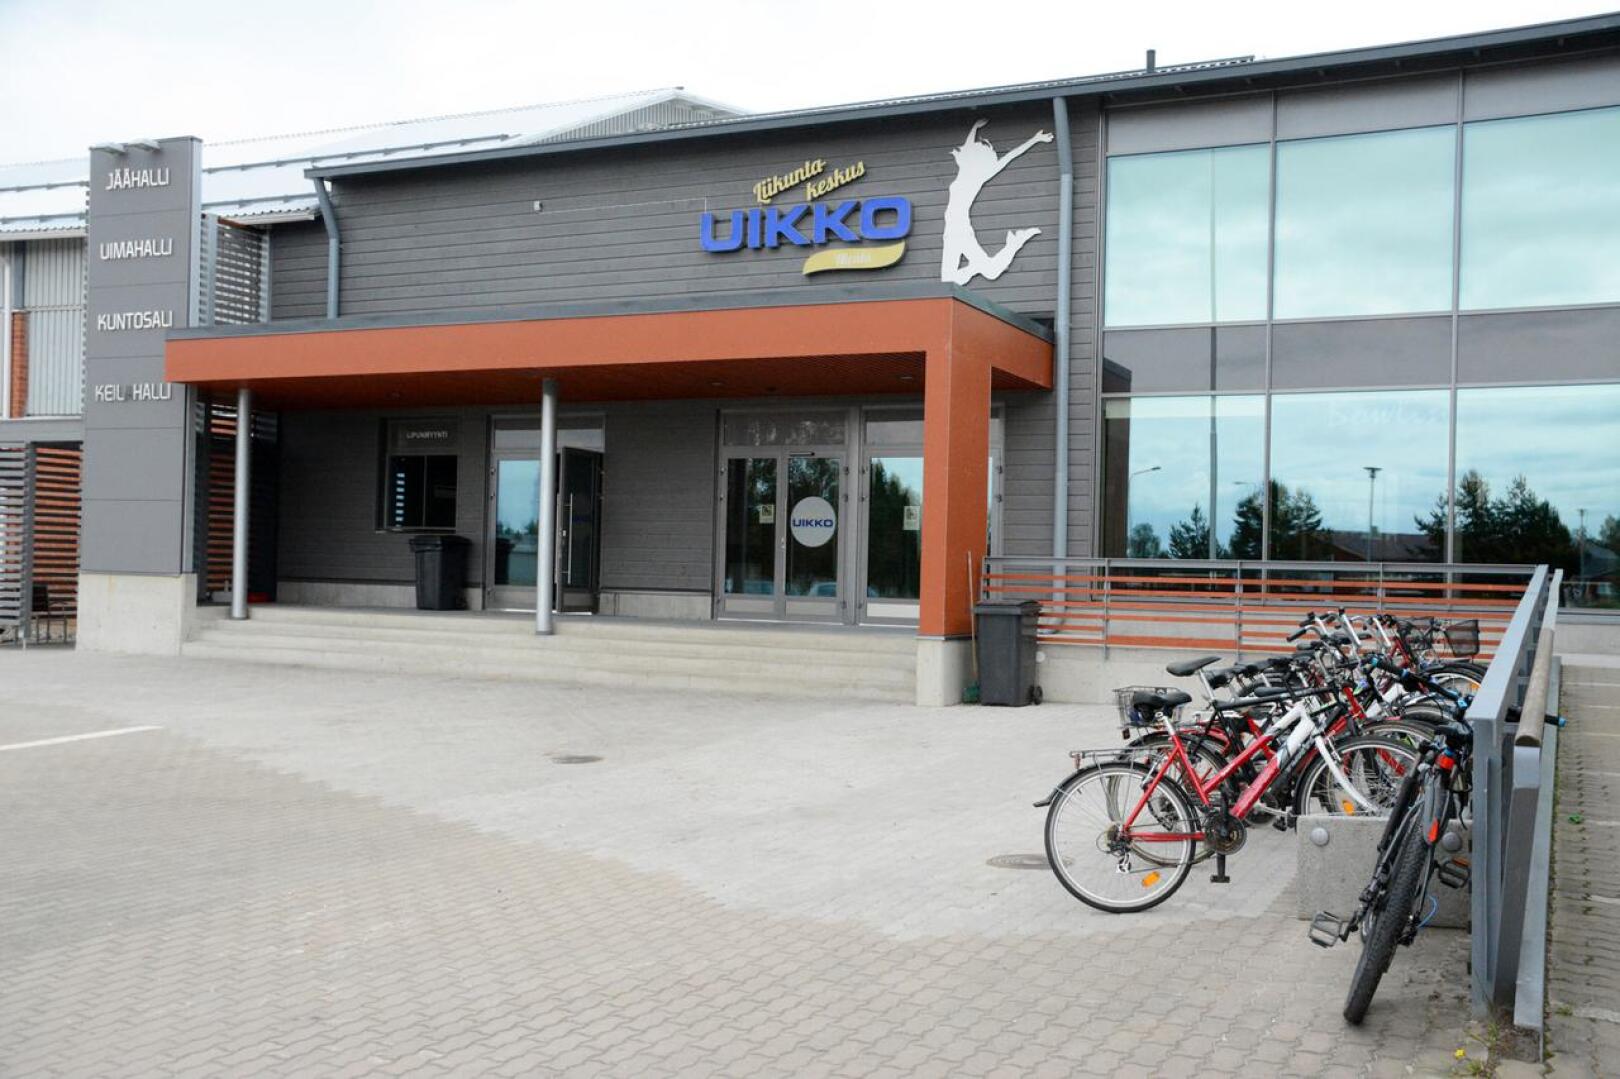 Nivalan monitoimihallia suunnitellaan liikuntakeskus Uikon yhteyteen.